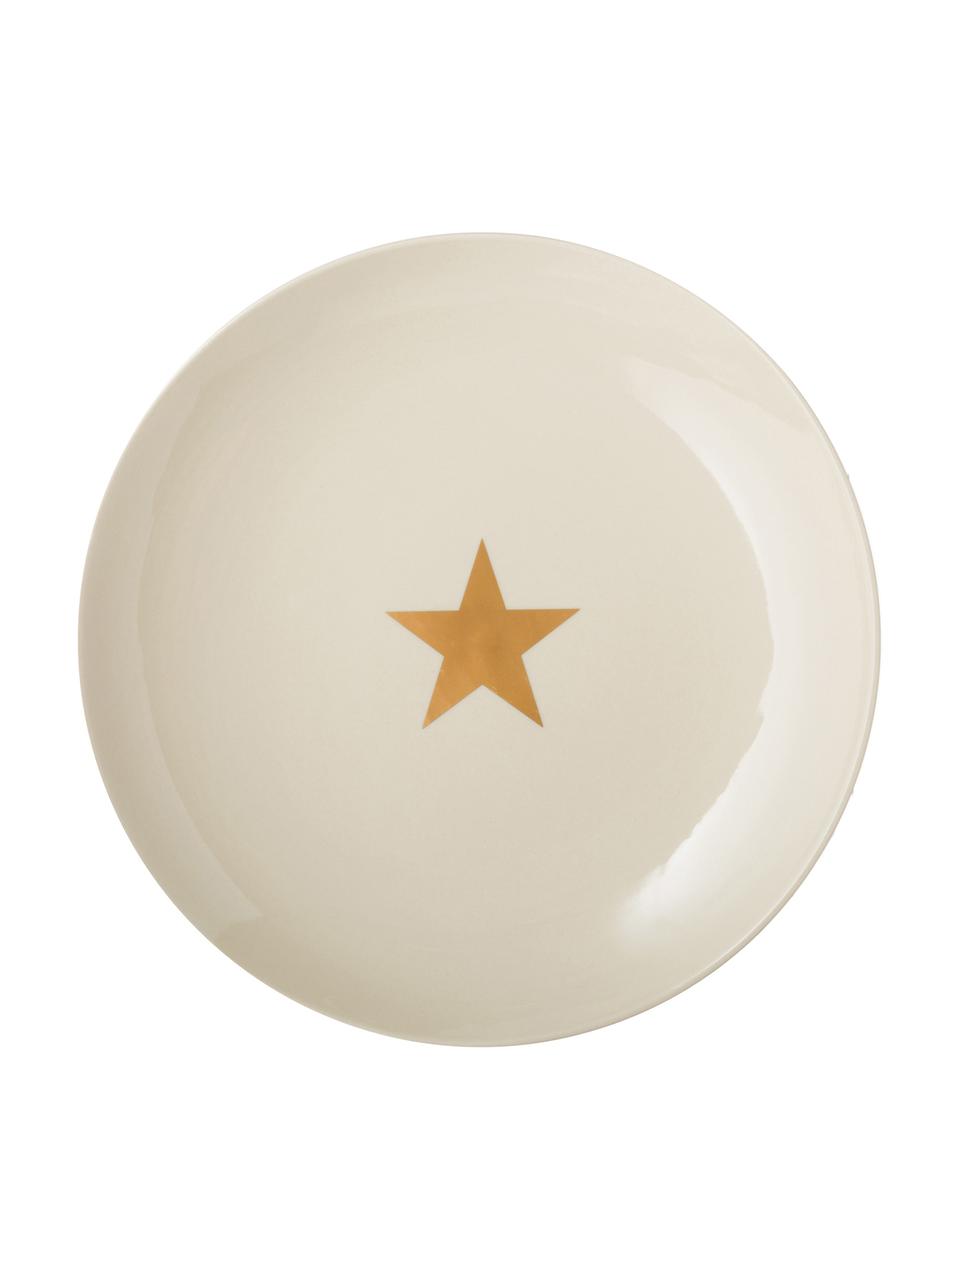 Speiseteller Star mit goldenem Stern, Keramik, Gebrochenes Weiß, Goldfarben, Ø 25 cm